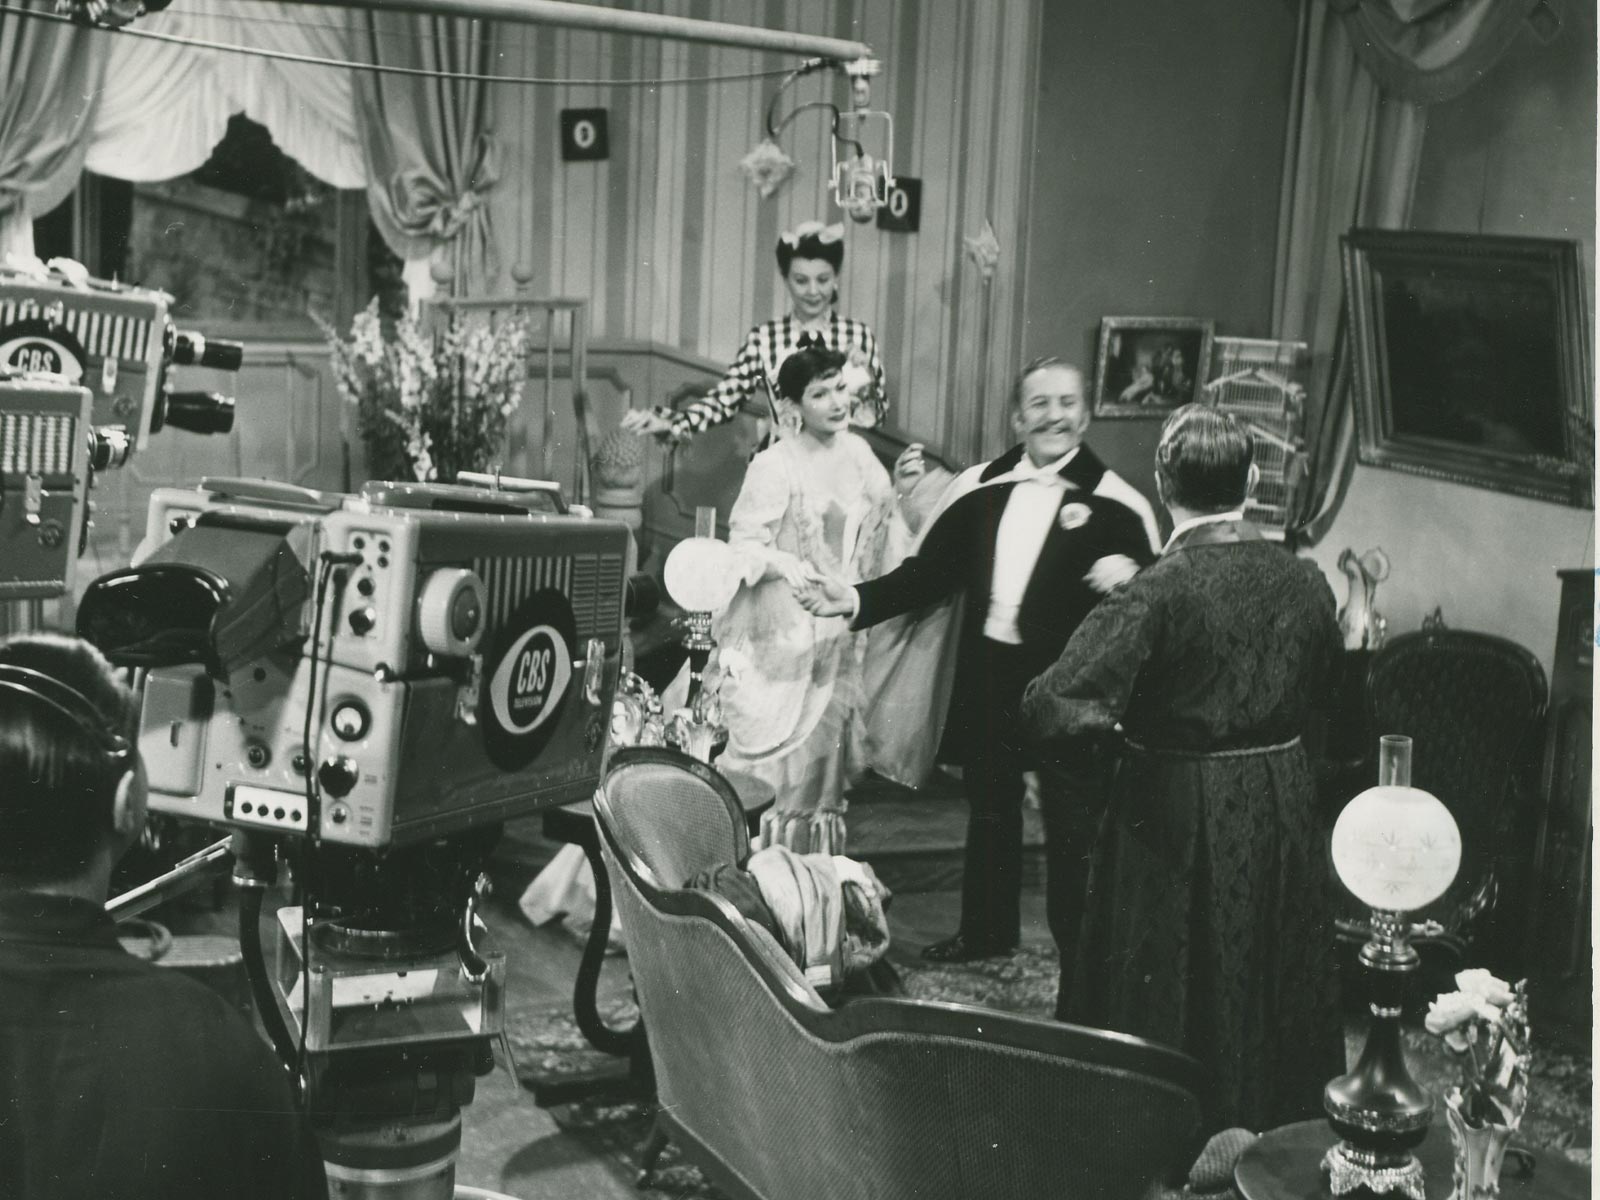 1953.02.01 Fledermaus_CBS Television Studio_Omnibus.jpg